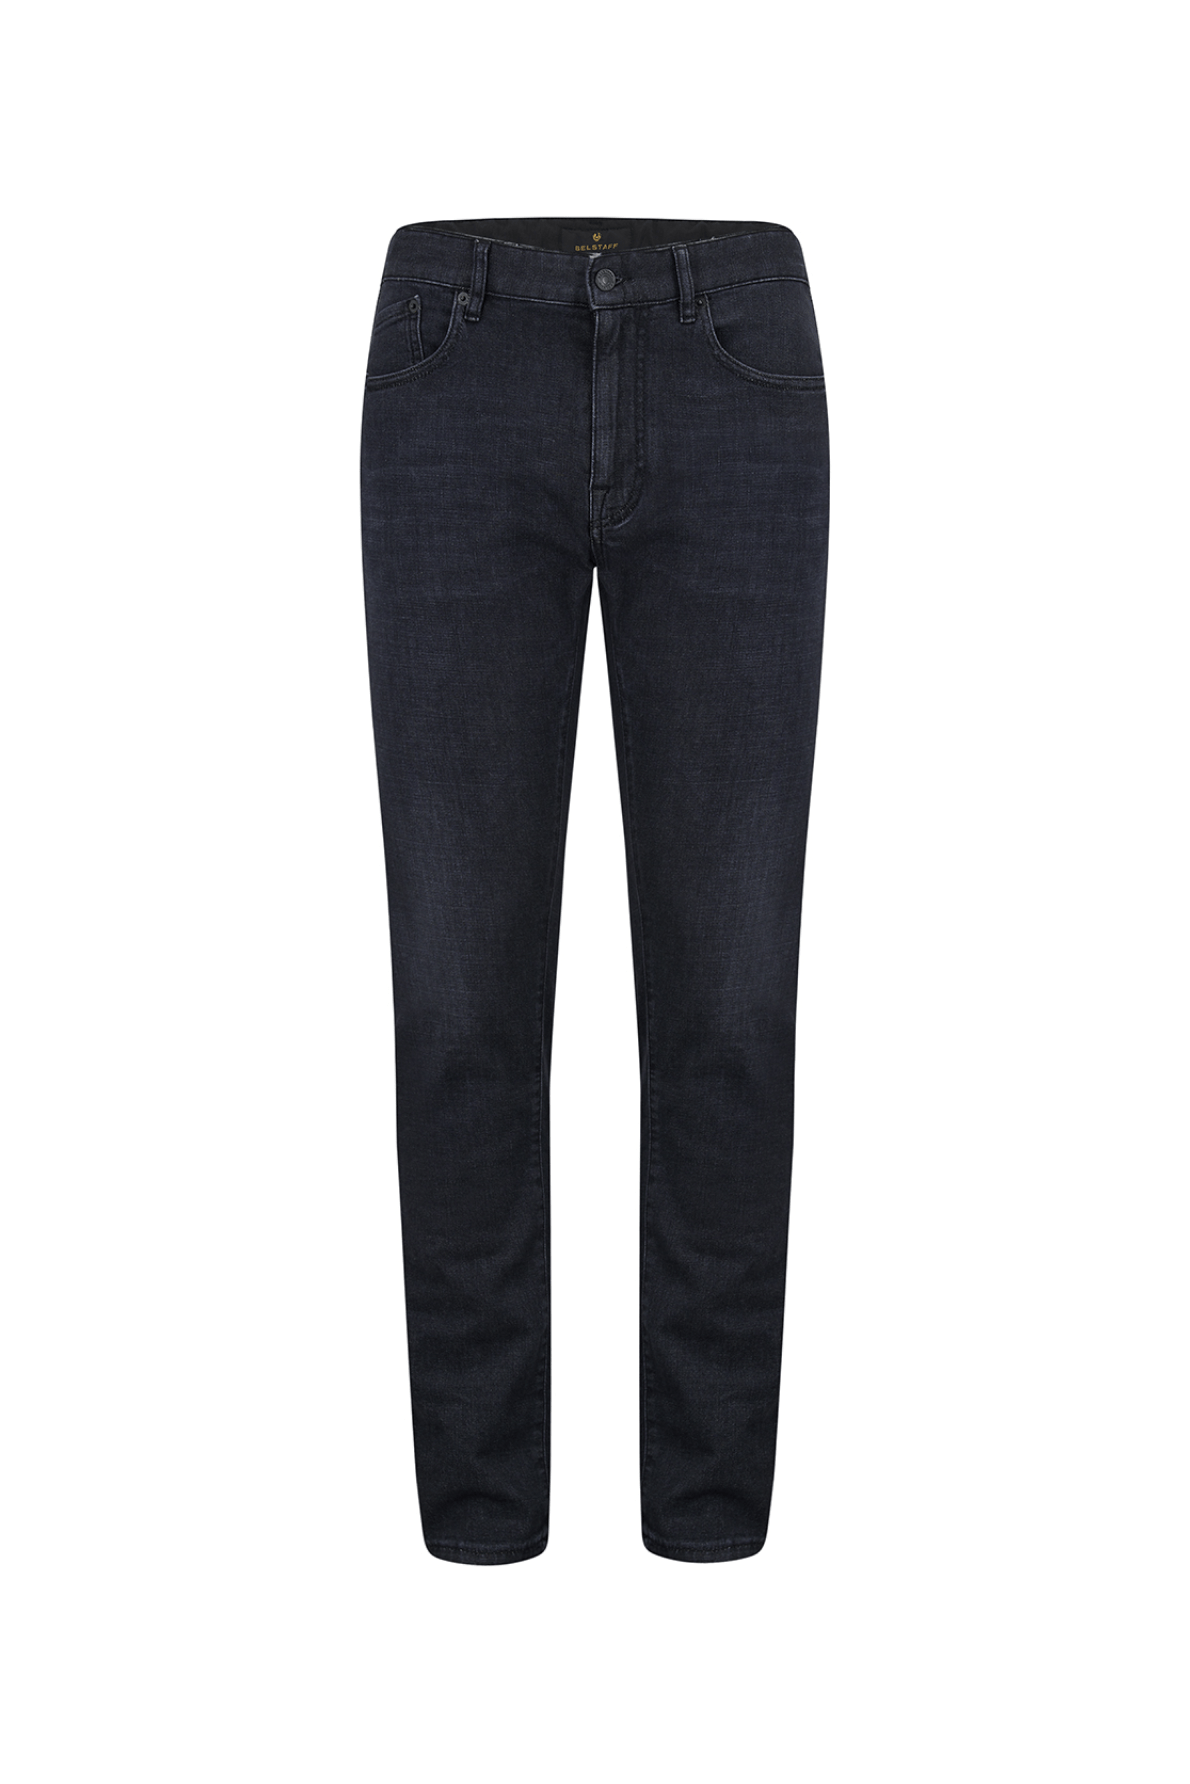 Belstaff Men's Longton Slim Jeans Black - Front View